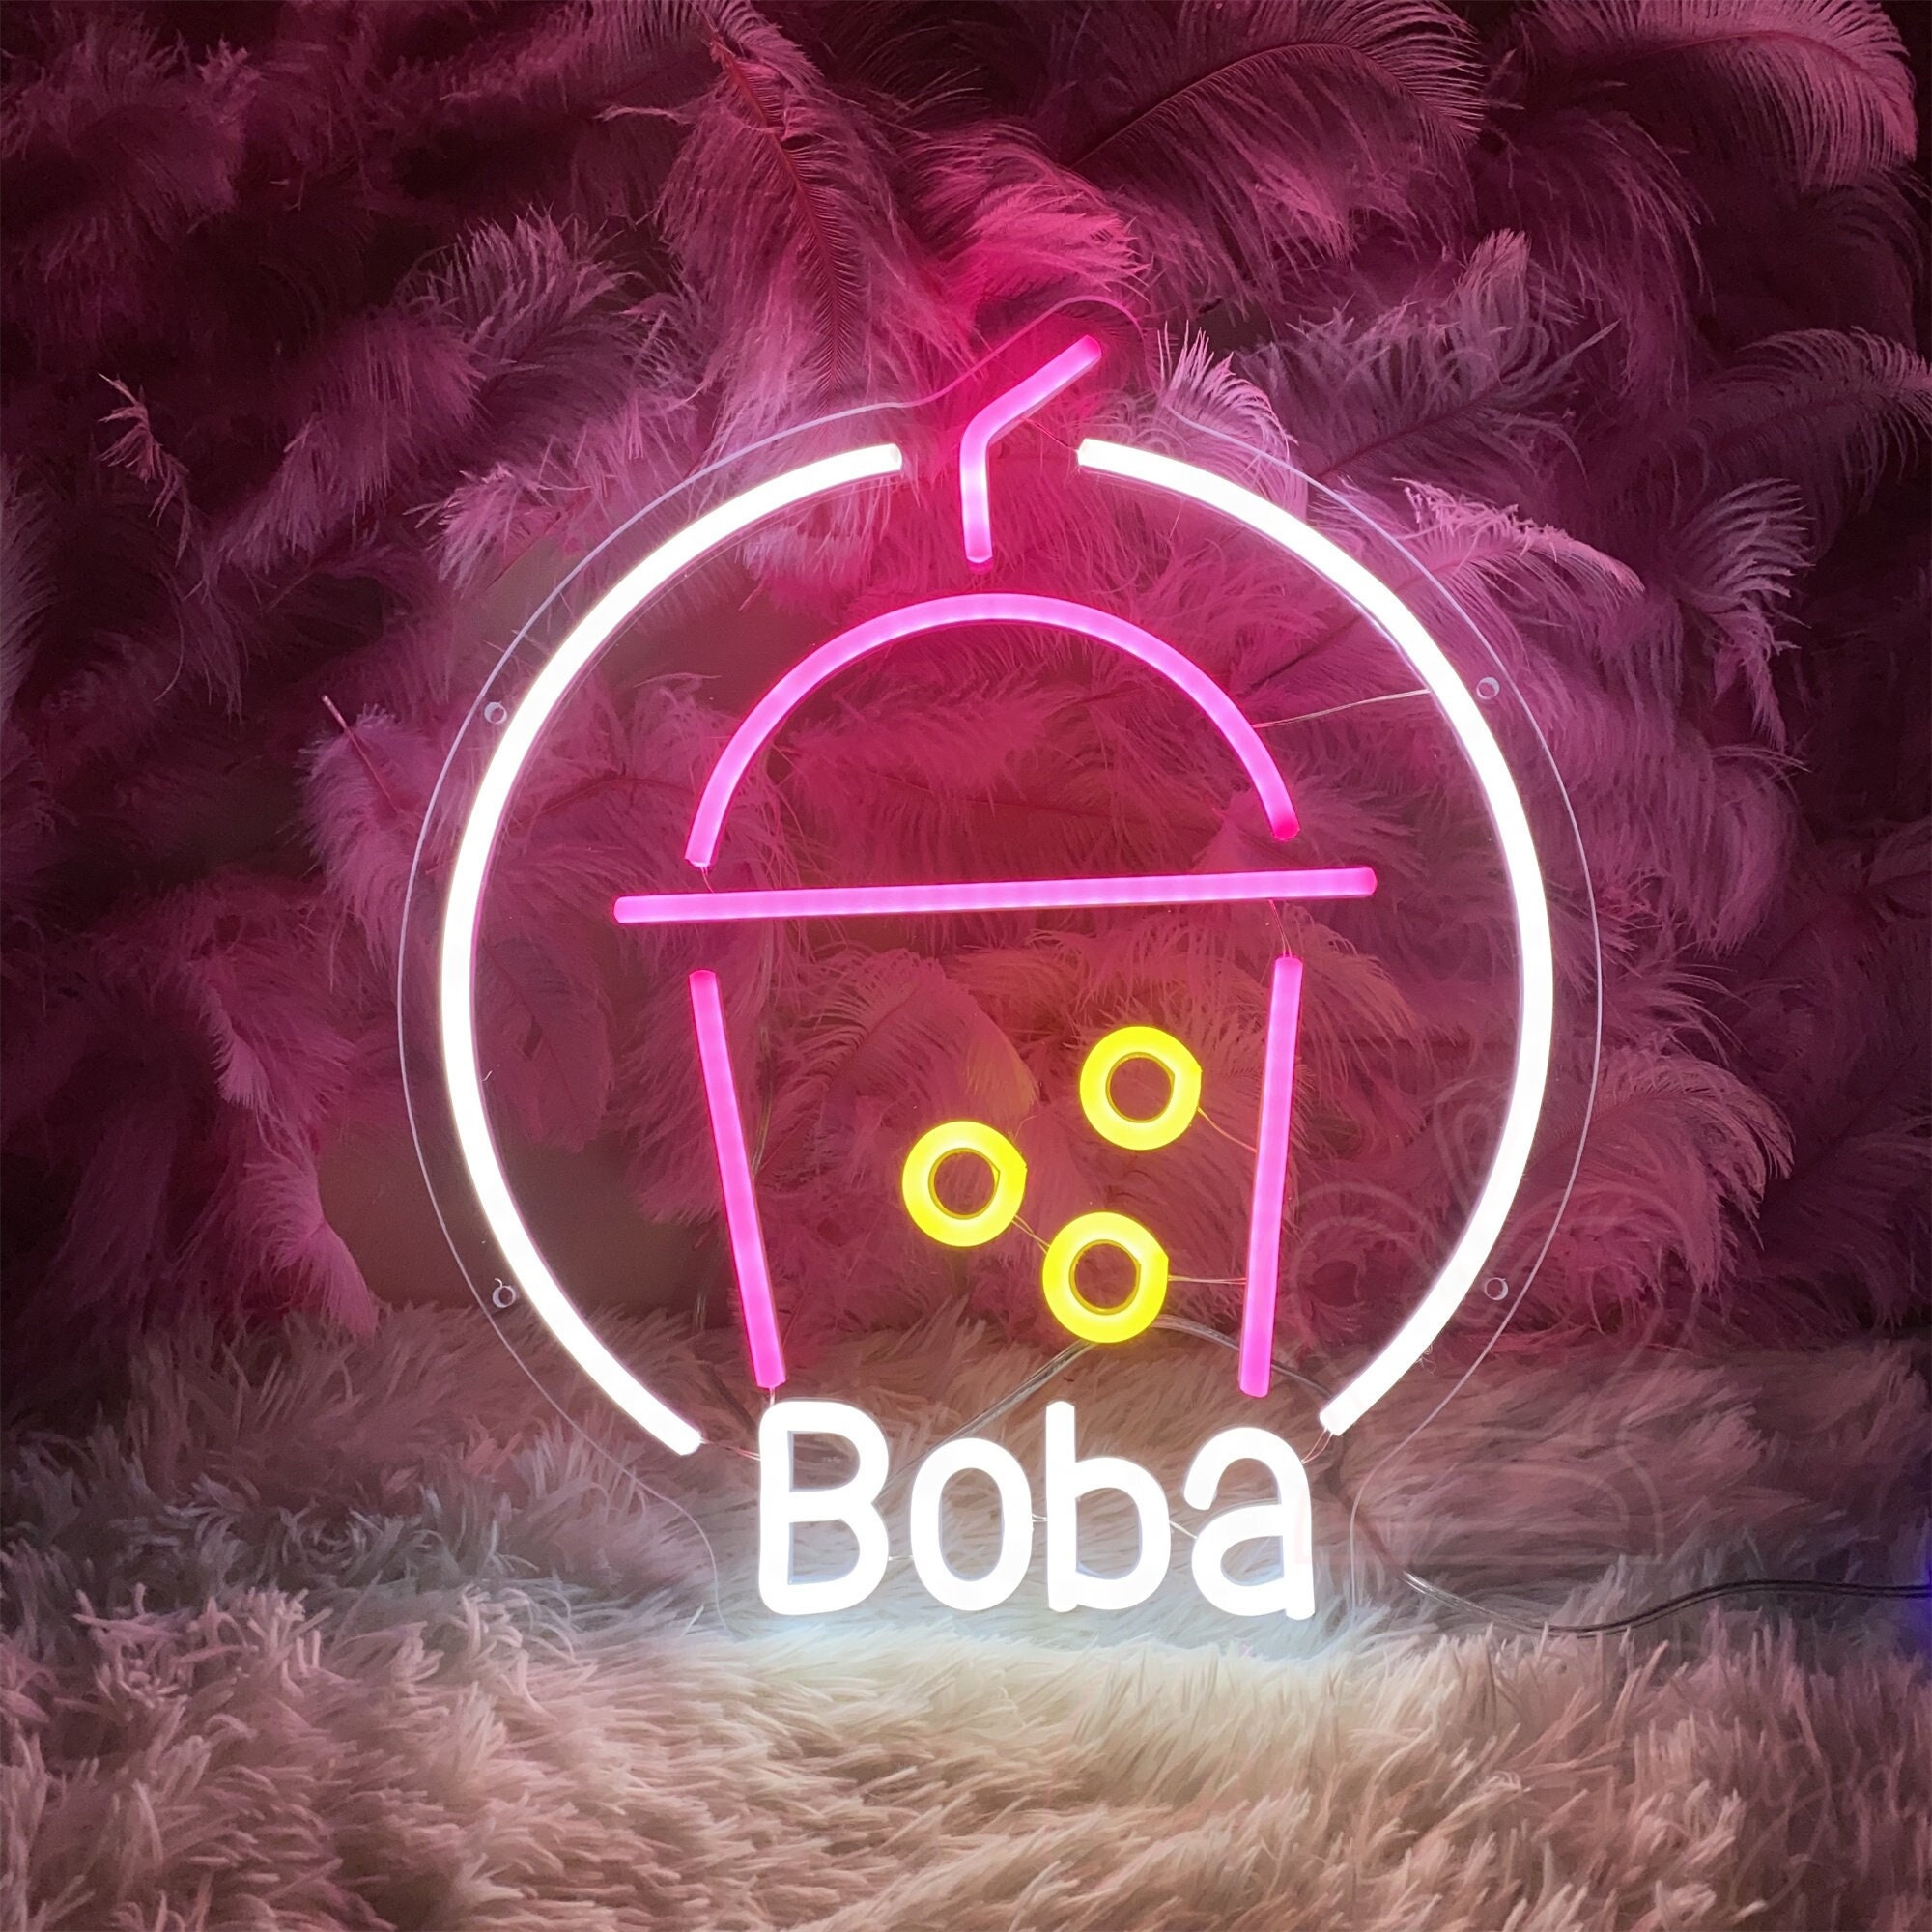 Boba Tea Led Sign Etsy